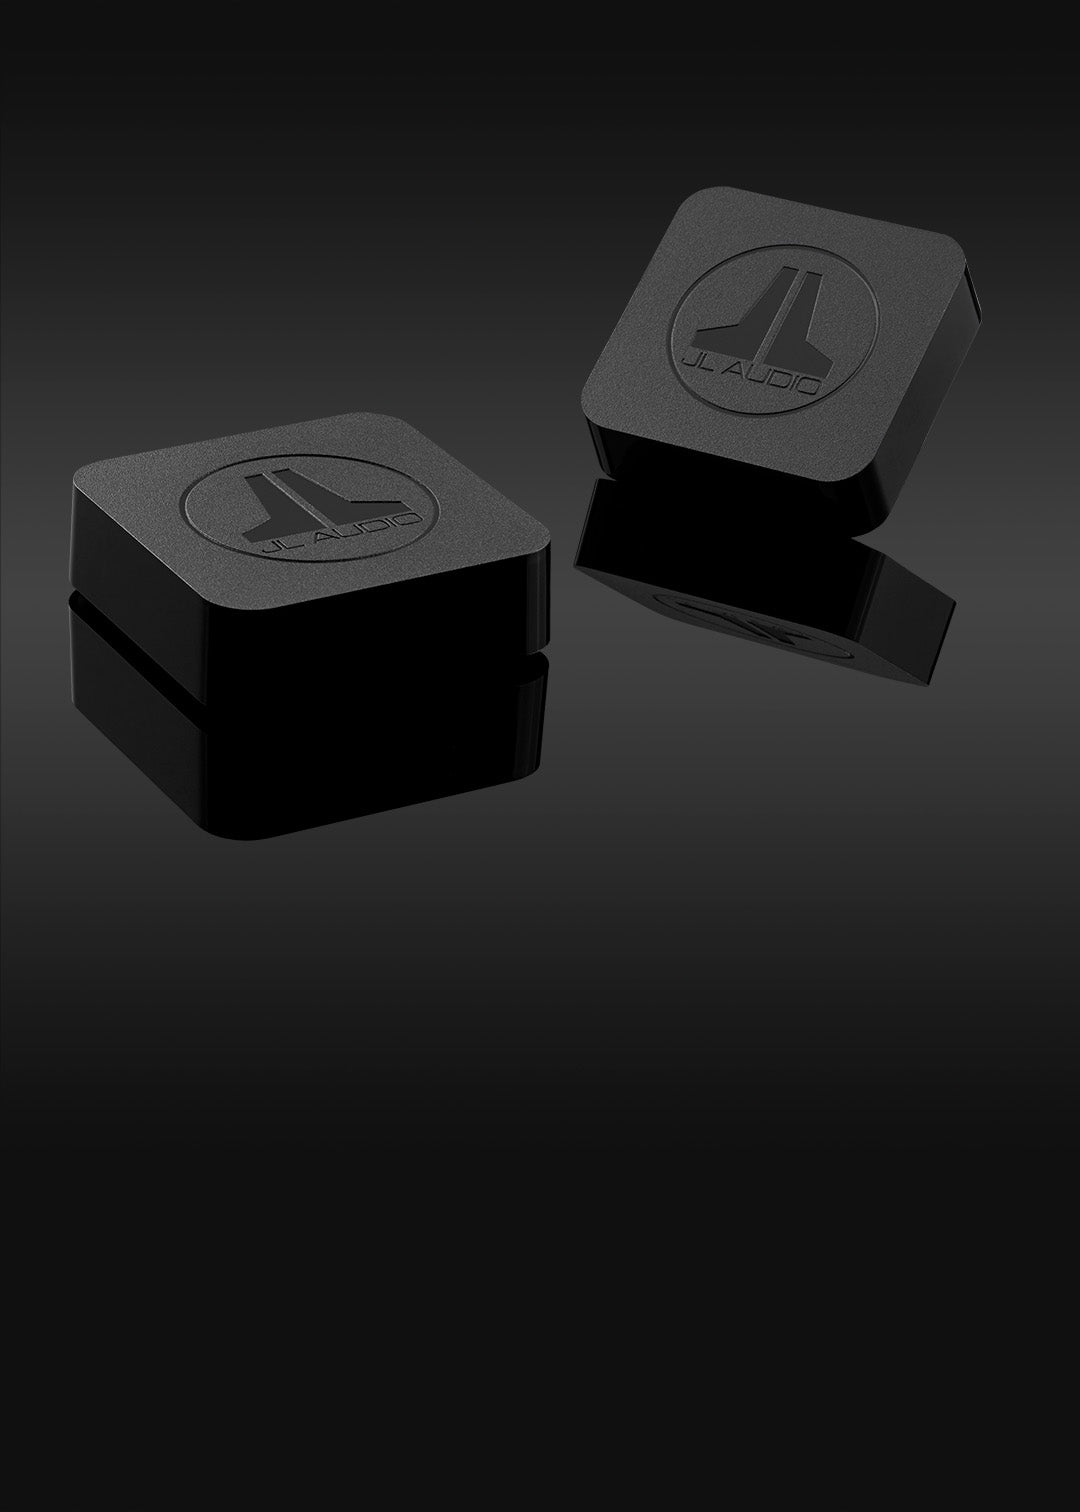 JLINK™ TRX wireless kit in a dark sleek setting.